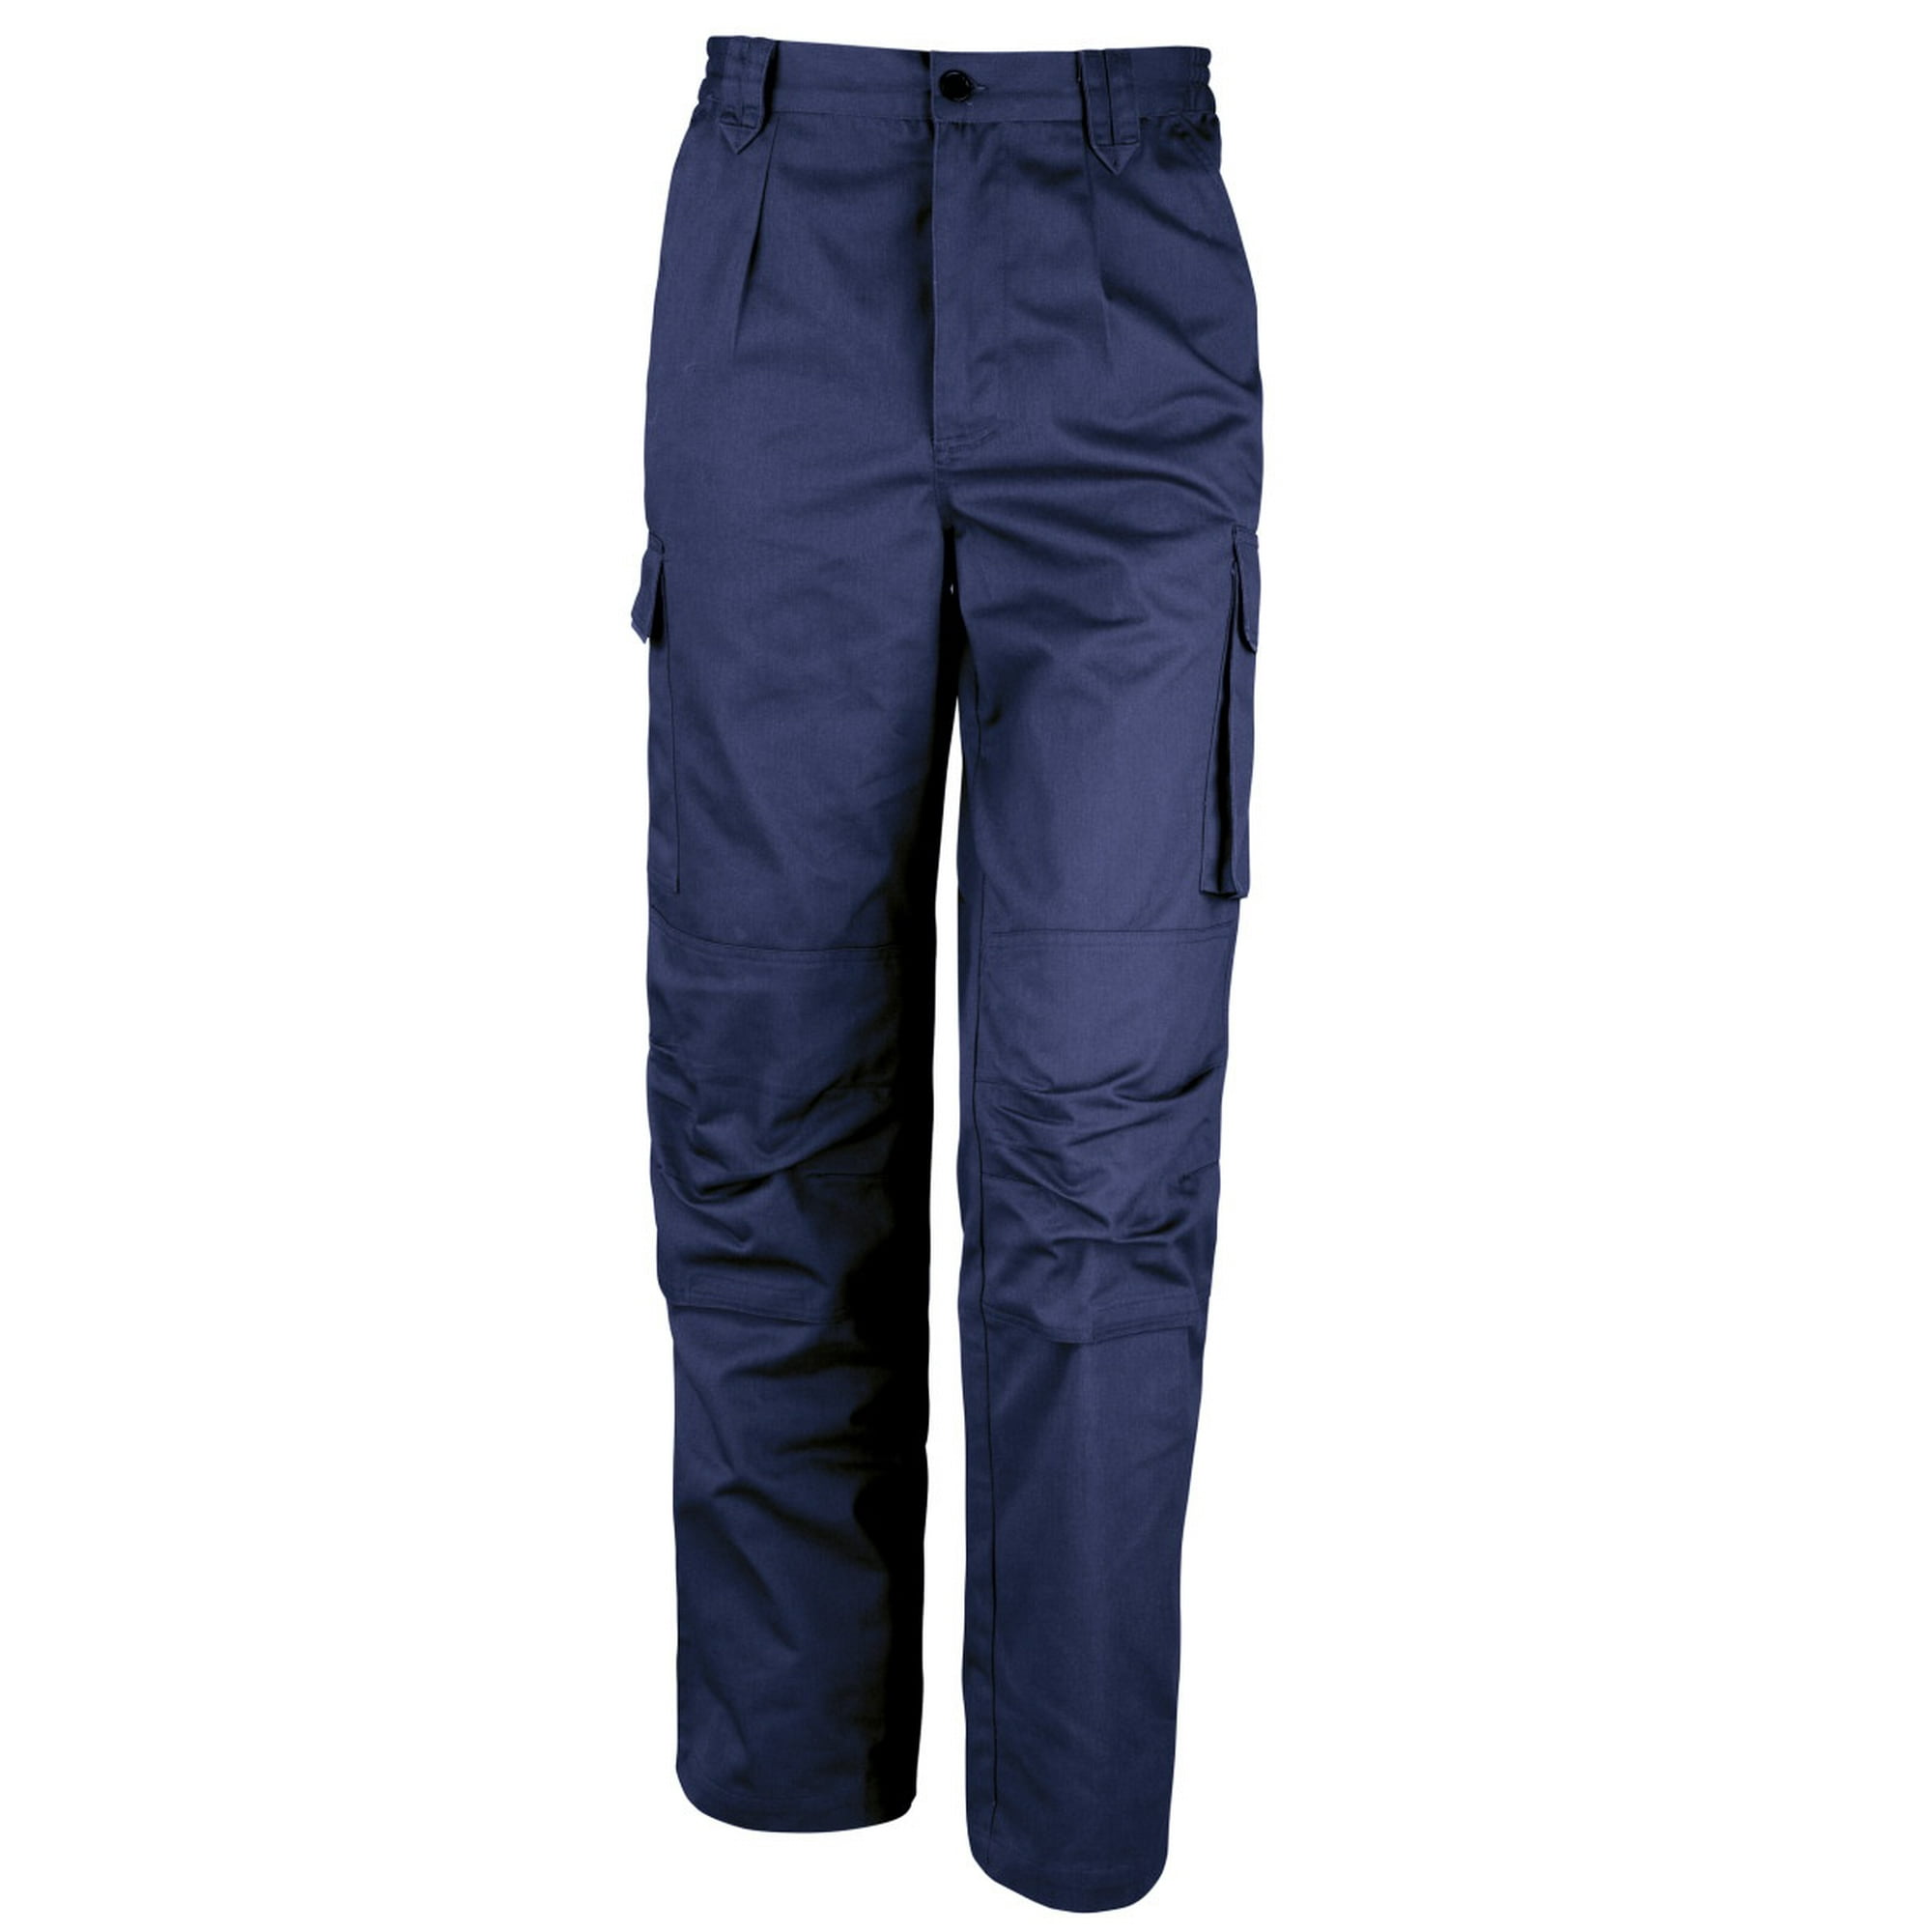 Result - Pantalones de trabajo cortavientos Modelo Work-Guard